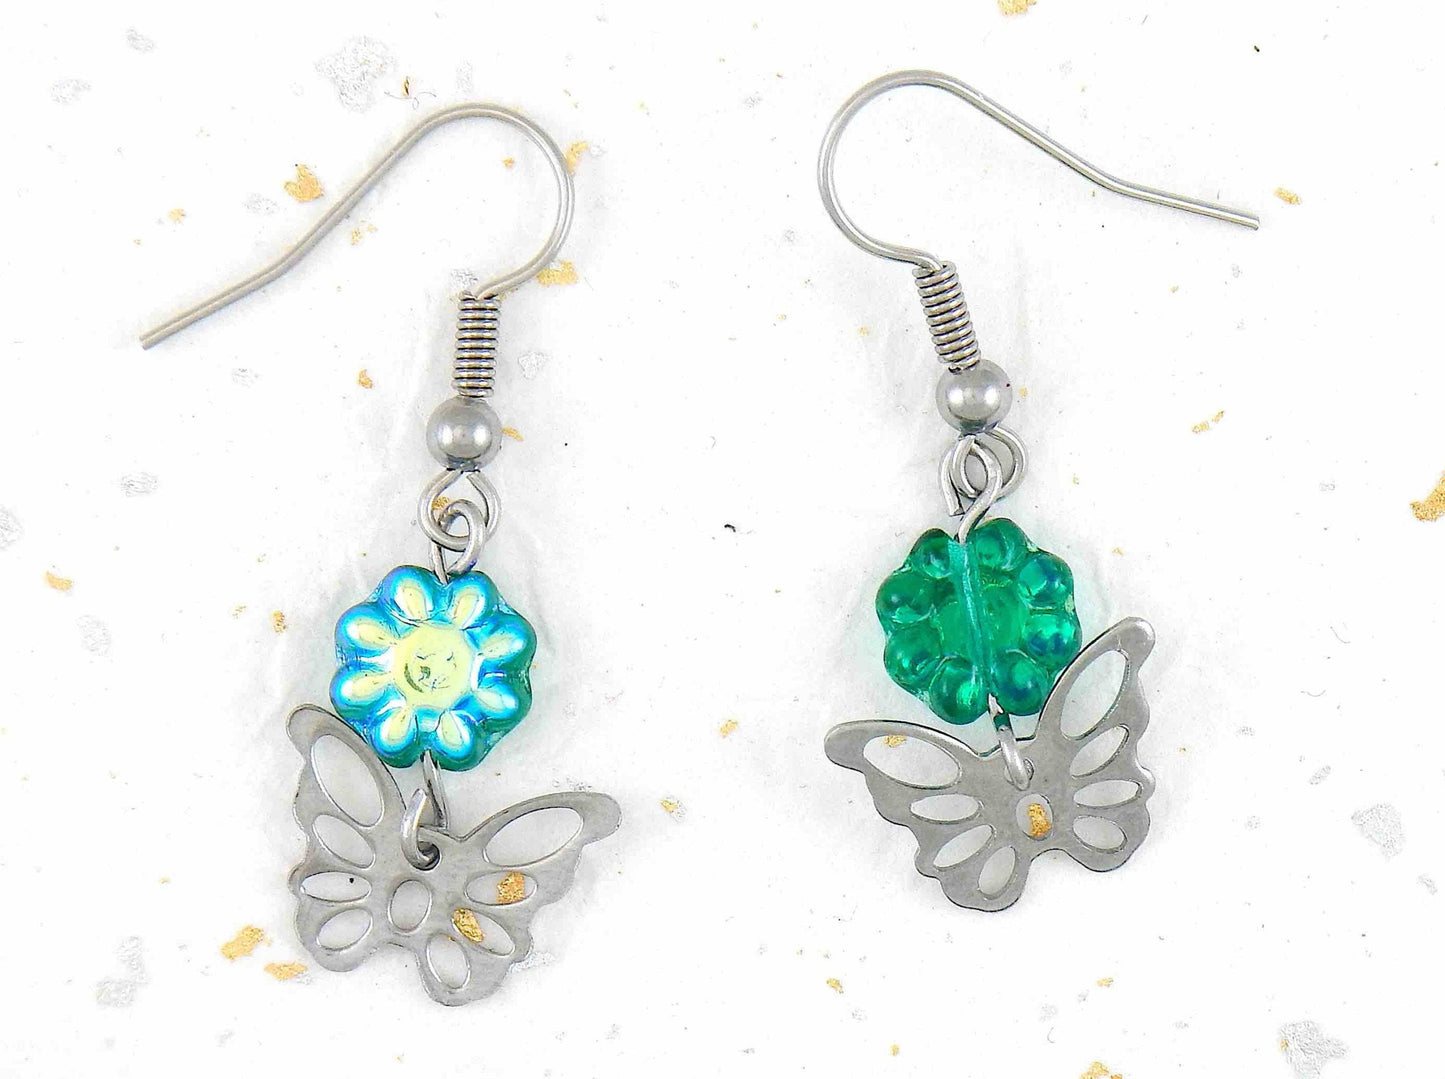 Boucles d'oreilles courtes papillons ajourés en acier inoxydable, fleurs de verre tchèque vert irisé, crochets acier inoxydable